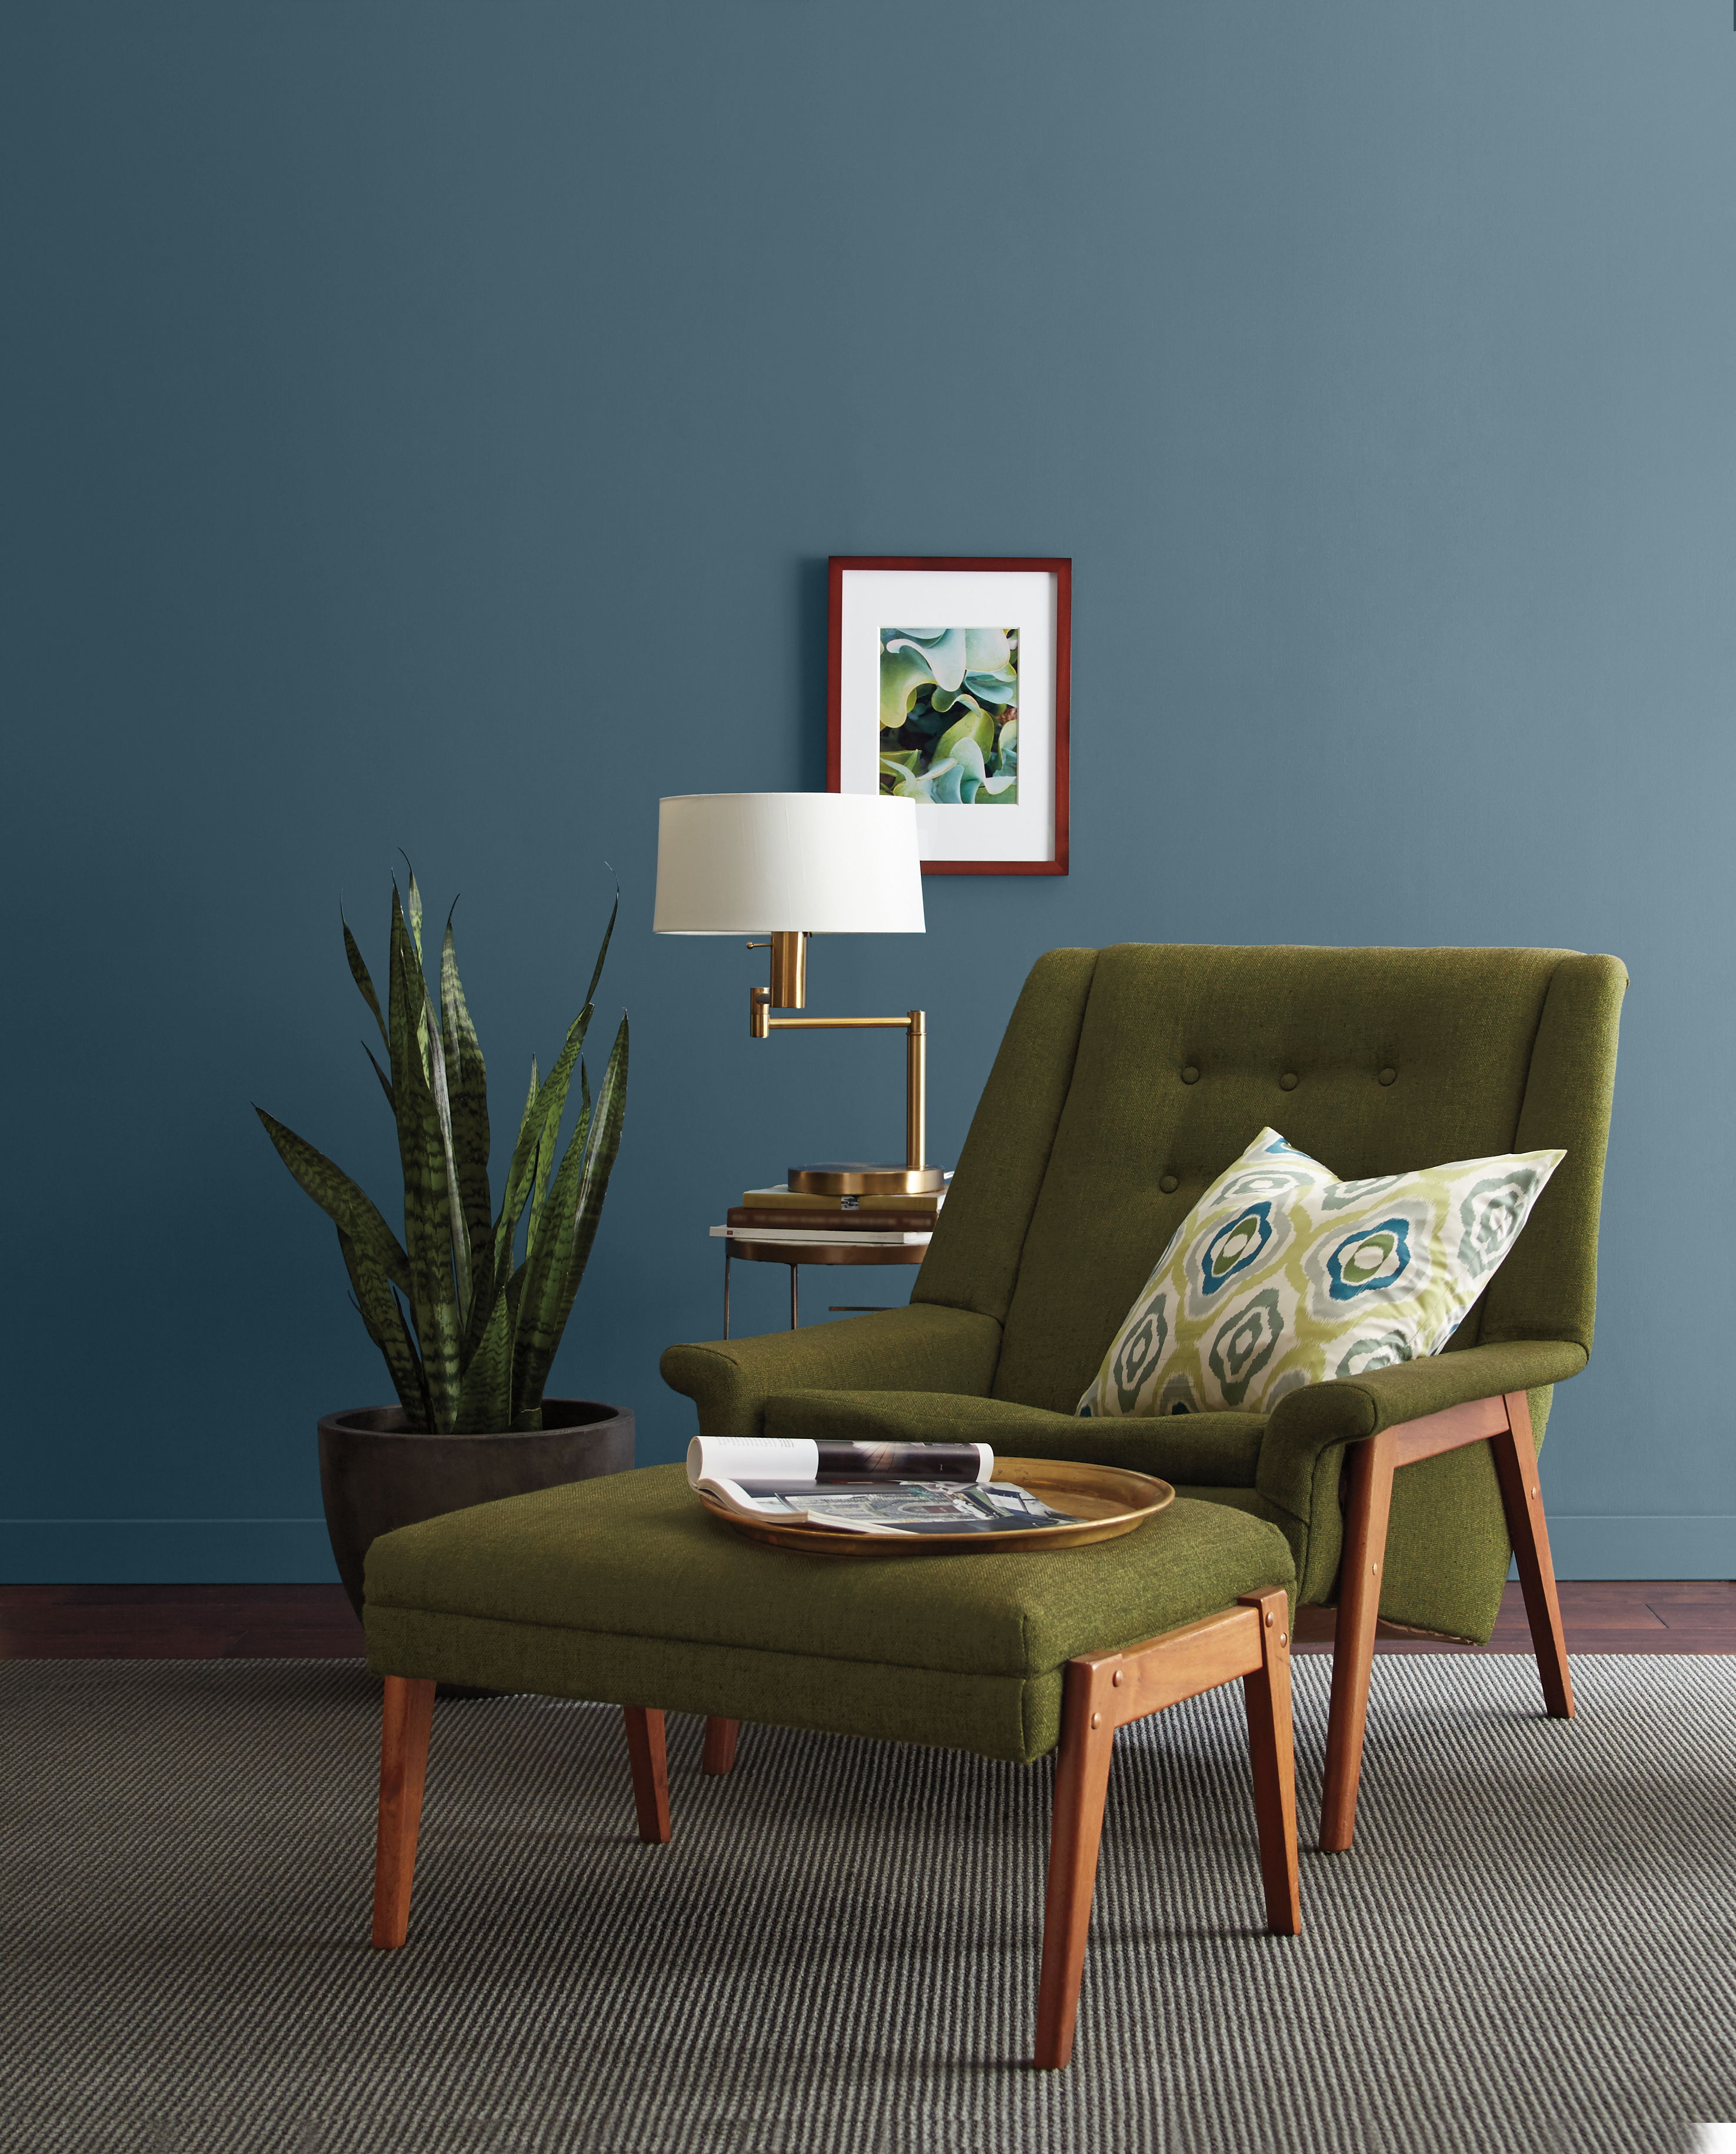 Mur peint en bleu foncé, agencé avec une chaise rétro vert olive et des éléments de décoration